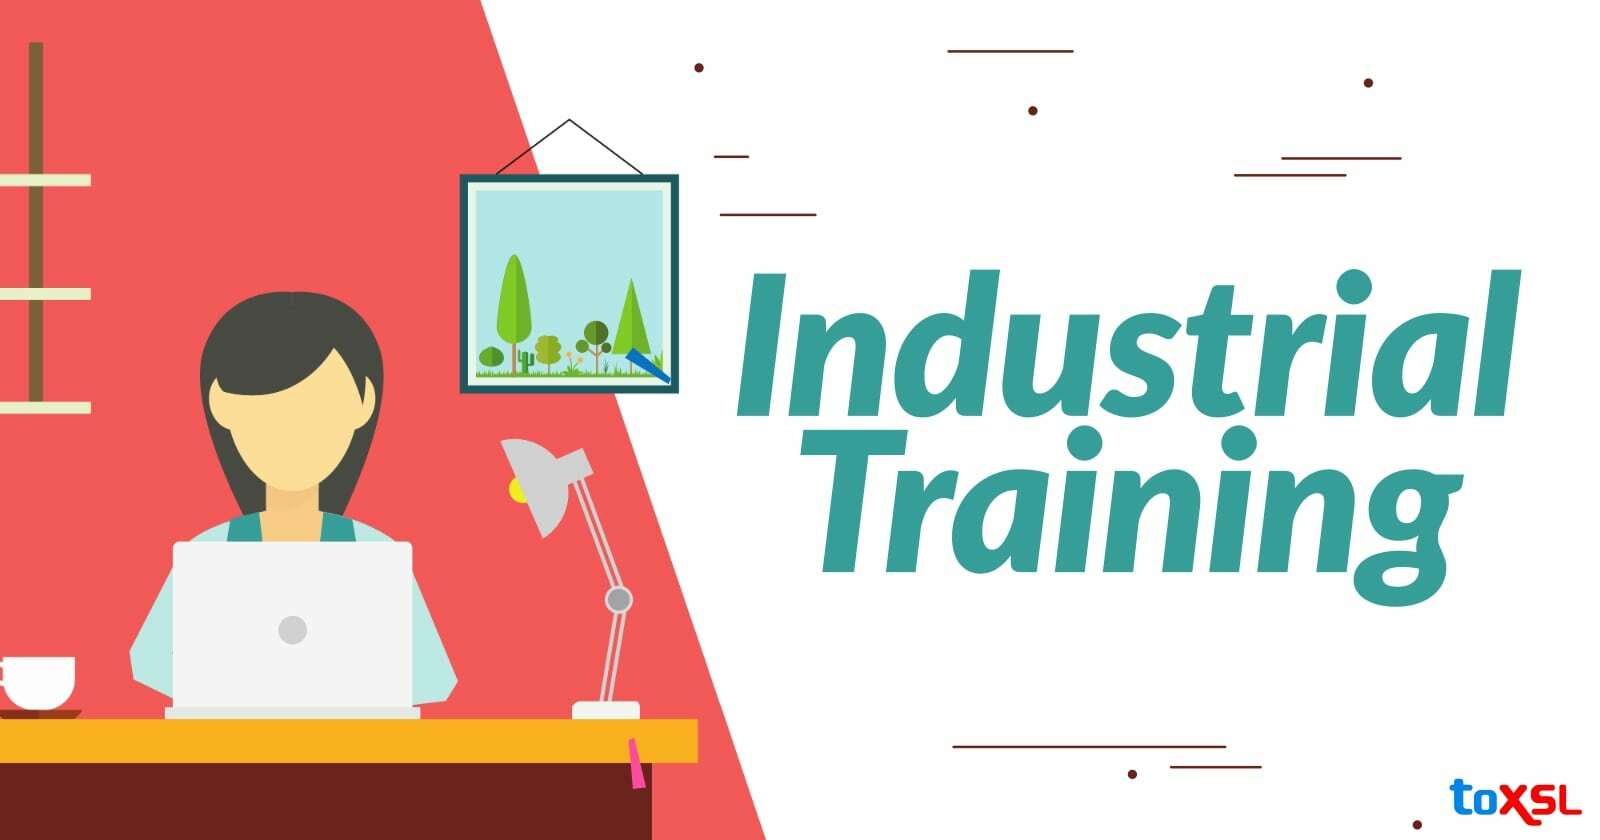 Internship / Industrial training